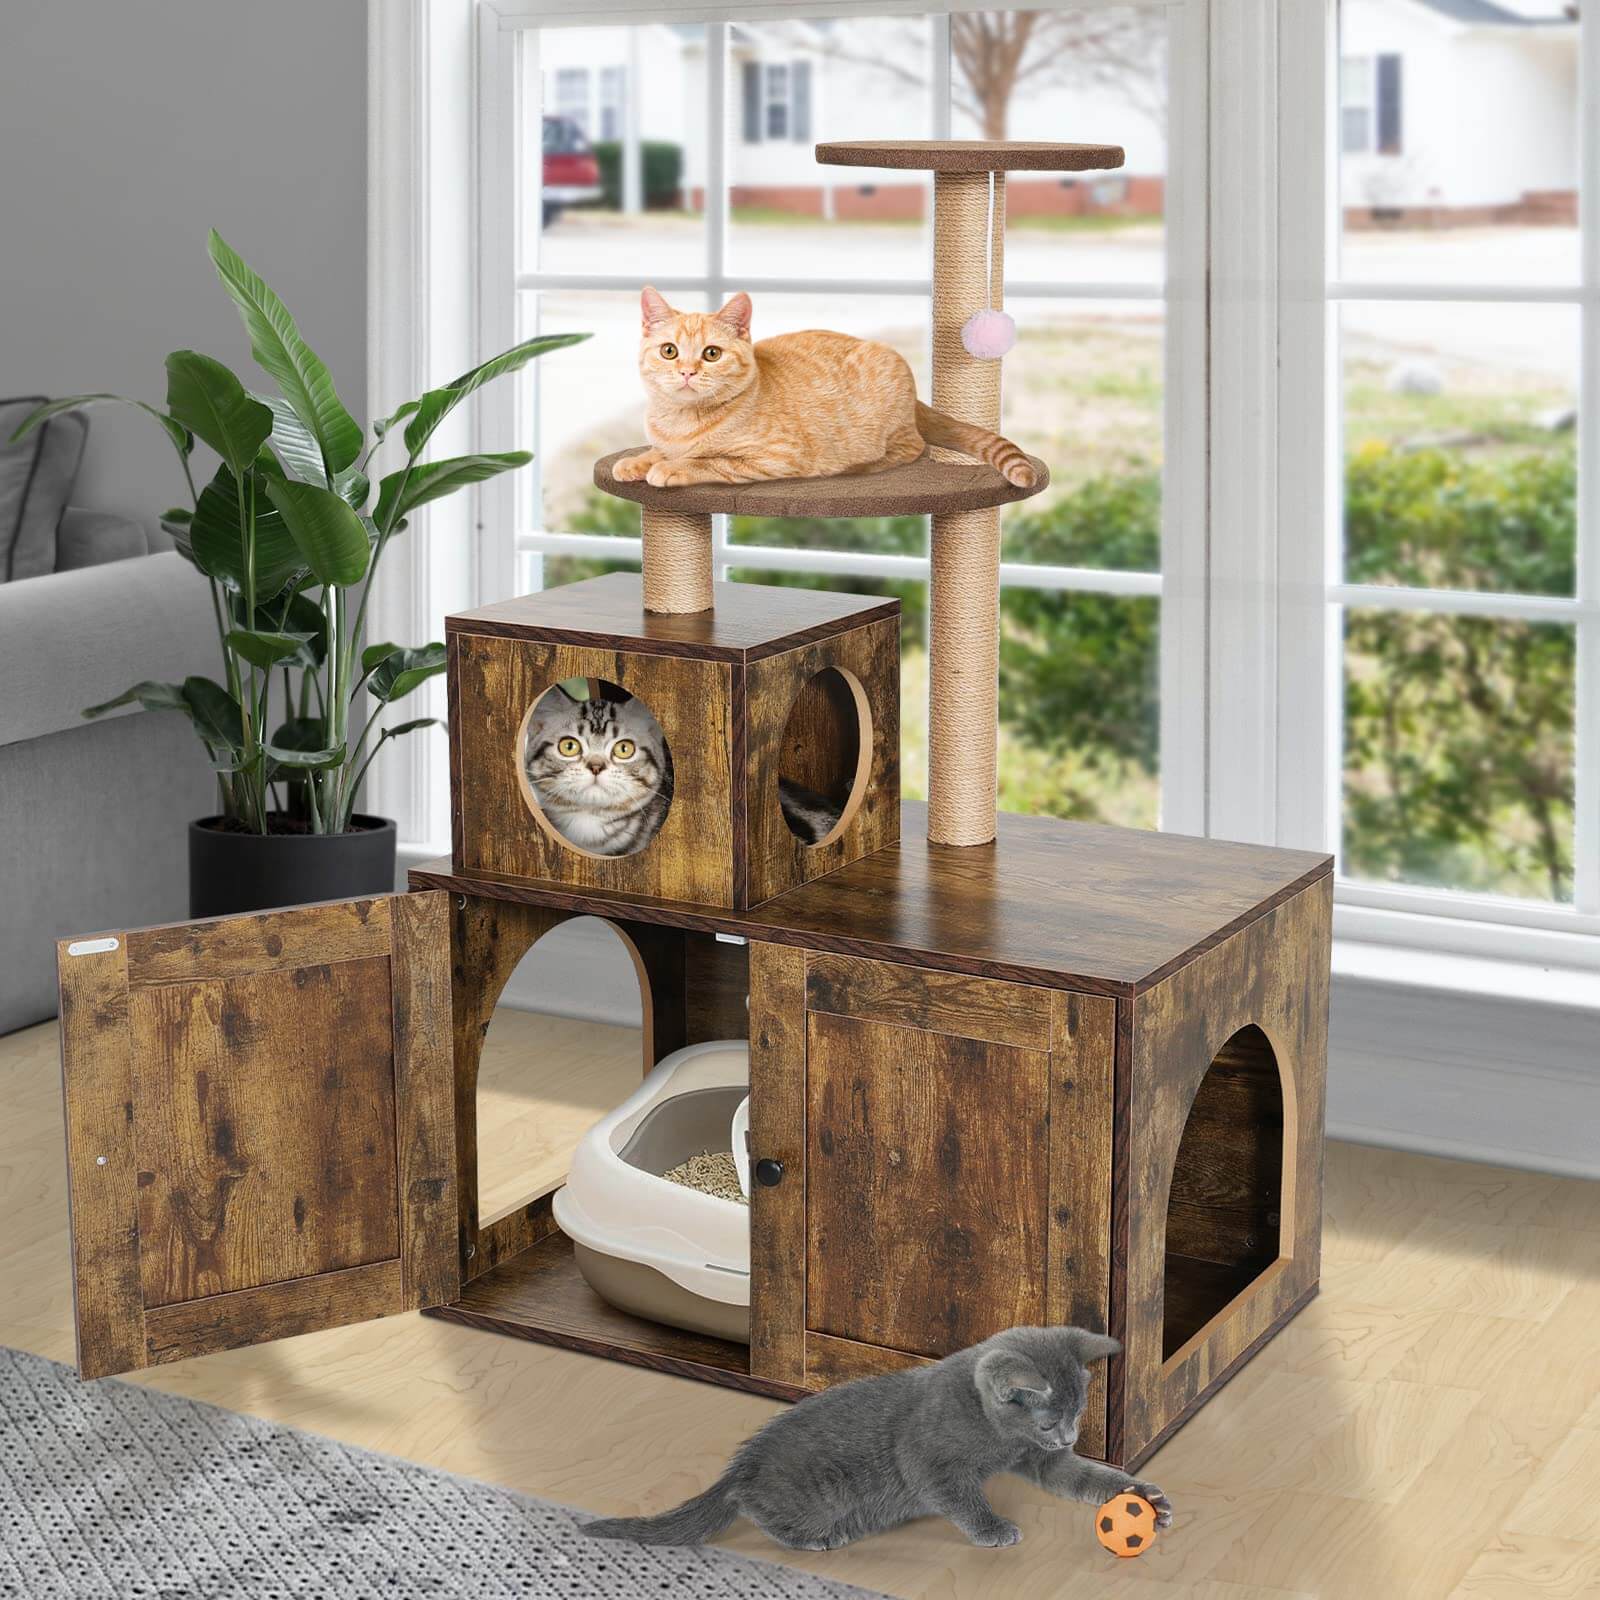 Cat Tree Cat Tower for Indoor Cats display scene